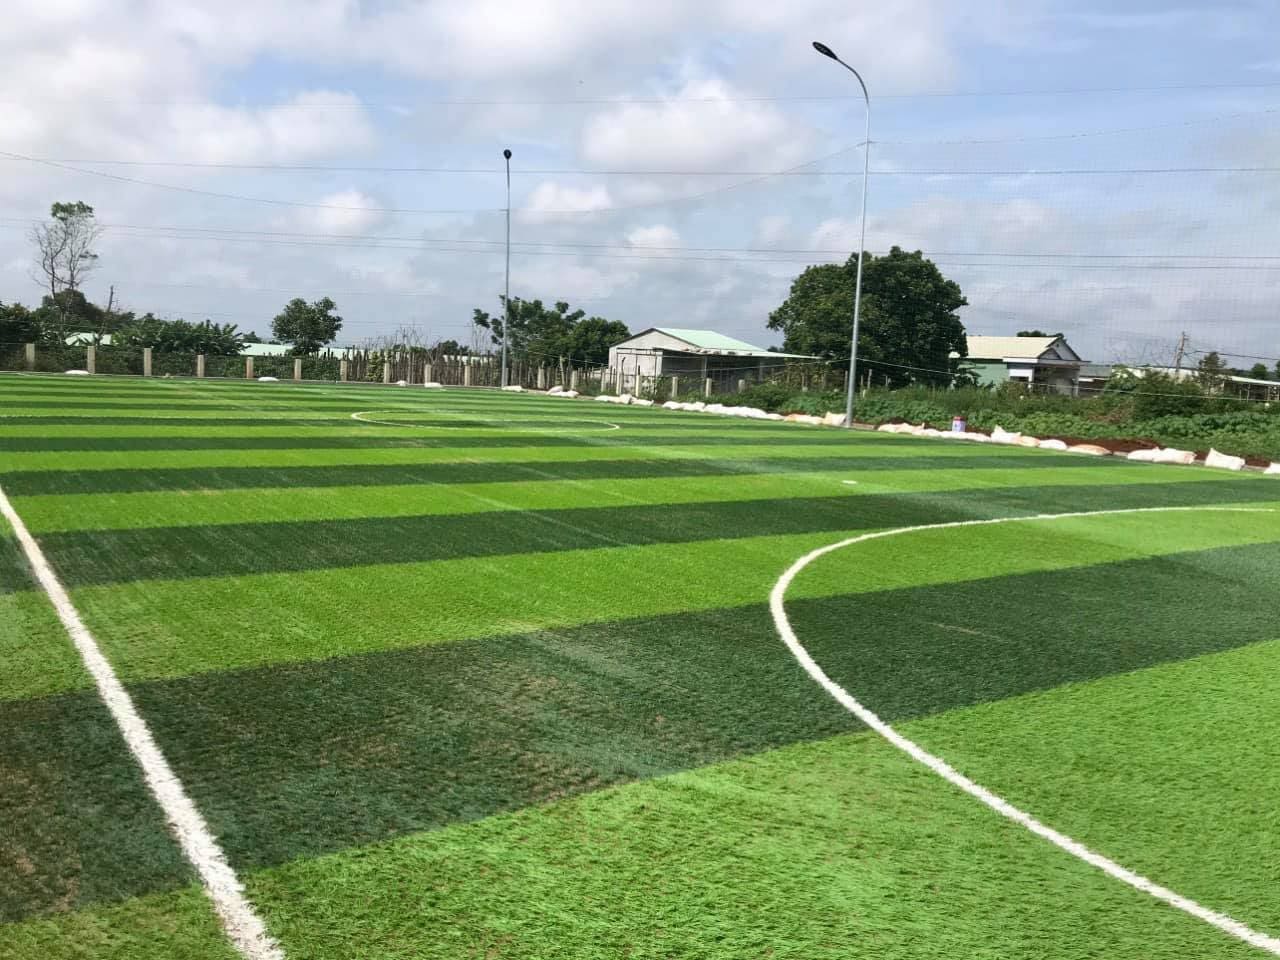 Thi công cỏ nhân tạo sân bóng đá tại Bạc Liêu